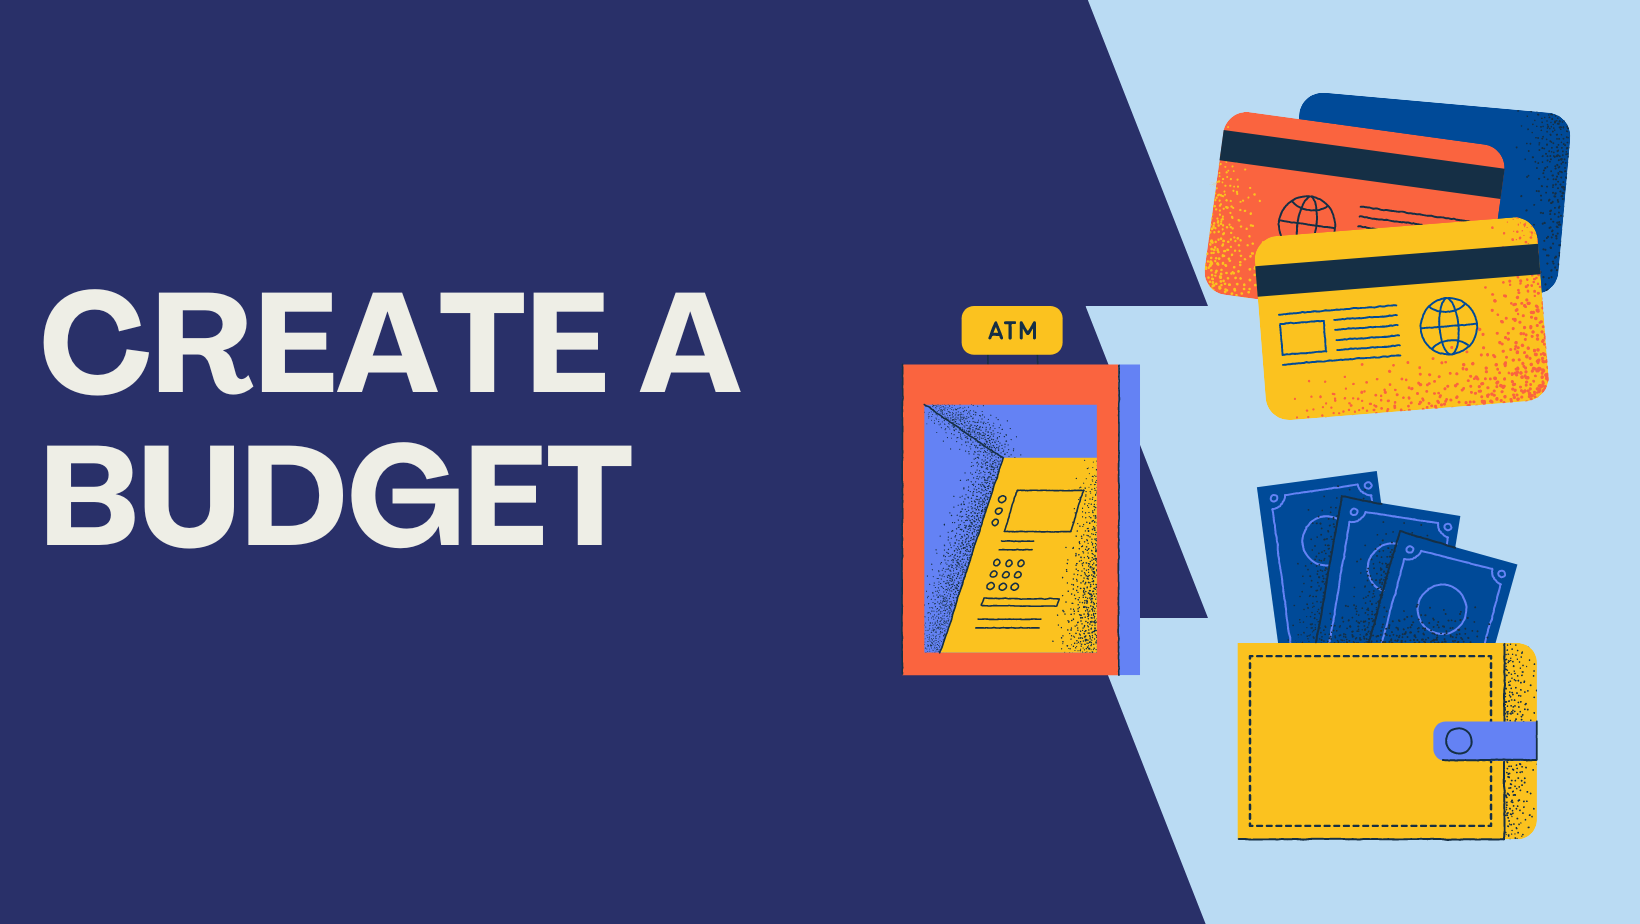 Create a budget